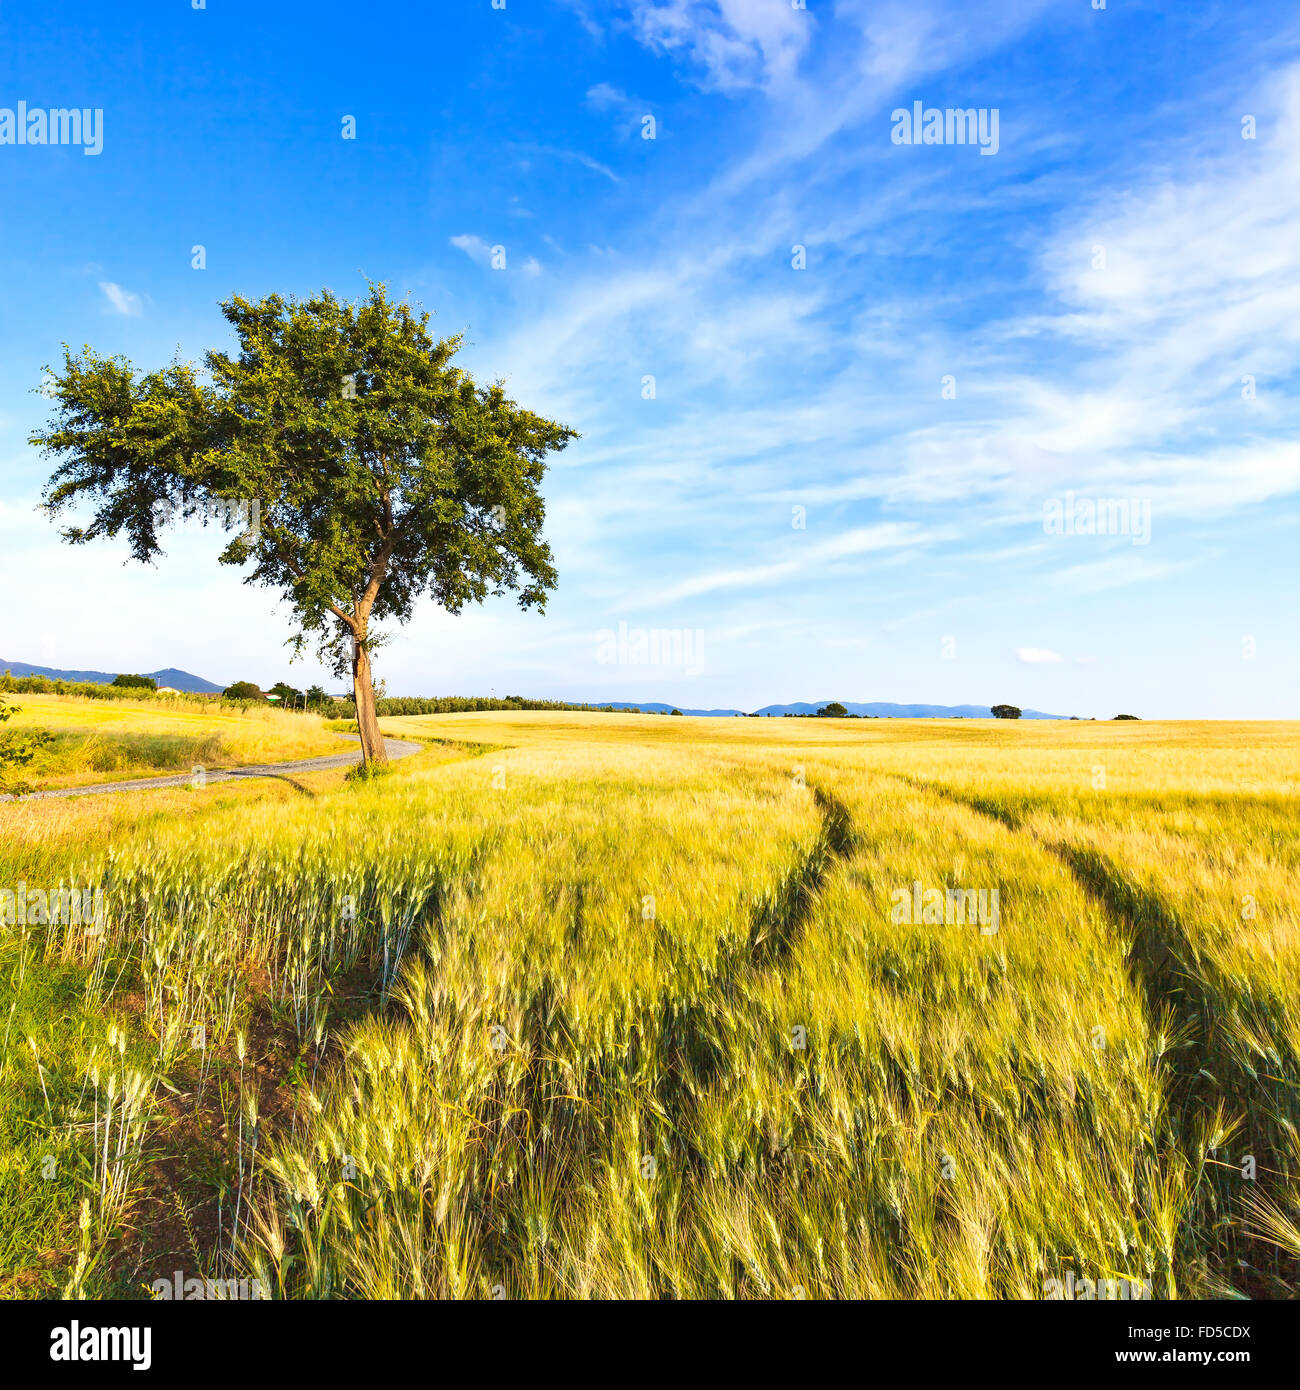 Ein Weizen mit Kurve zweigleisig und ein Baum in einem Frühlingstag eingereicht. Landschaft im ländlichen Raum. Am Horizont klarer Himmel. Toskana, Italien. Stockfoto